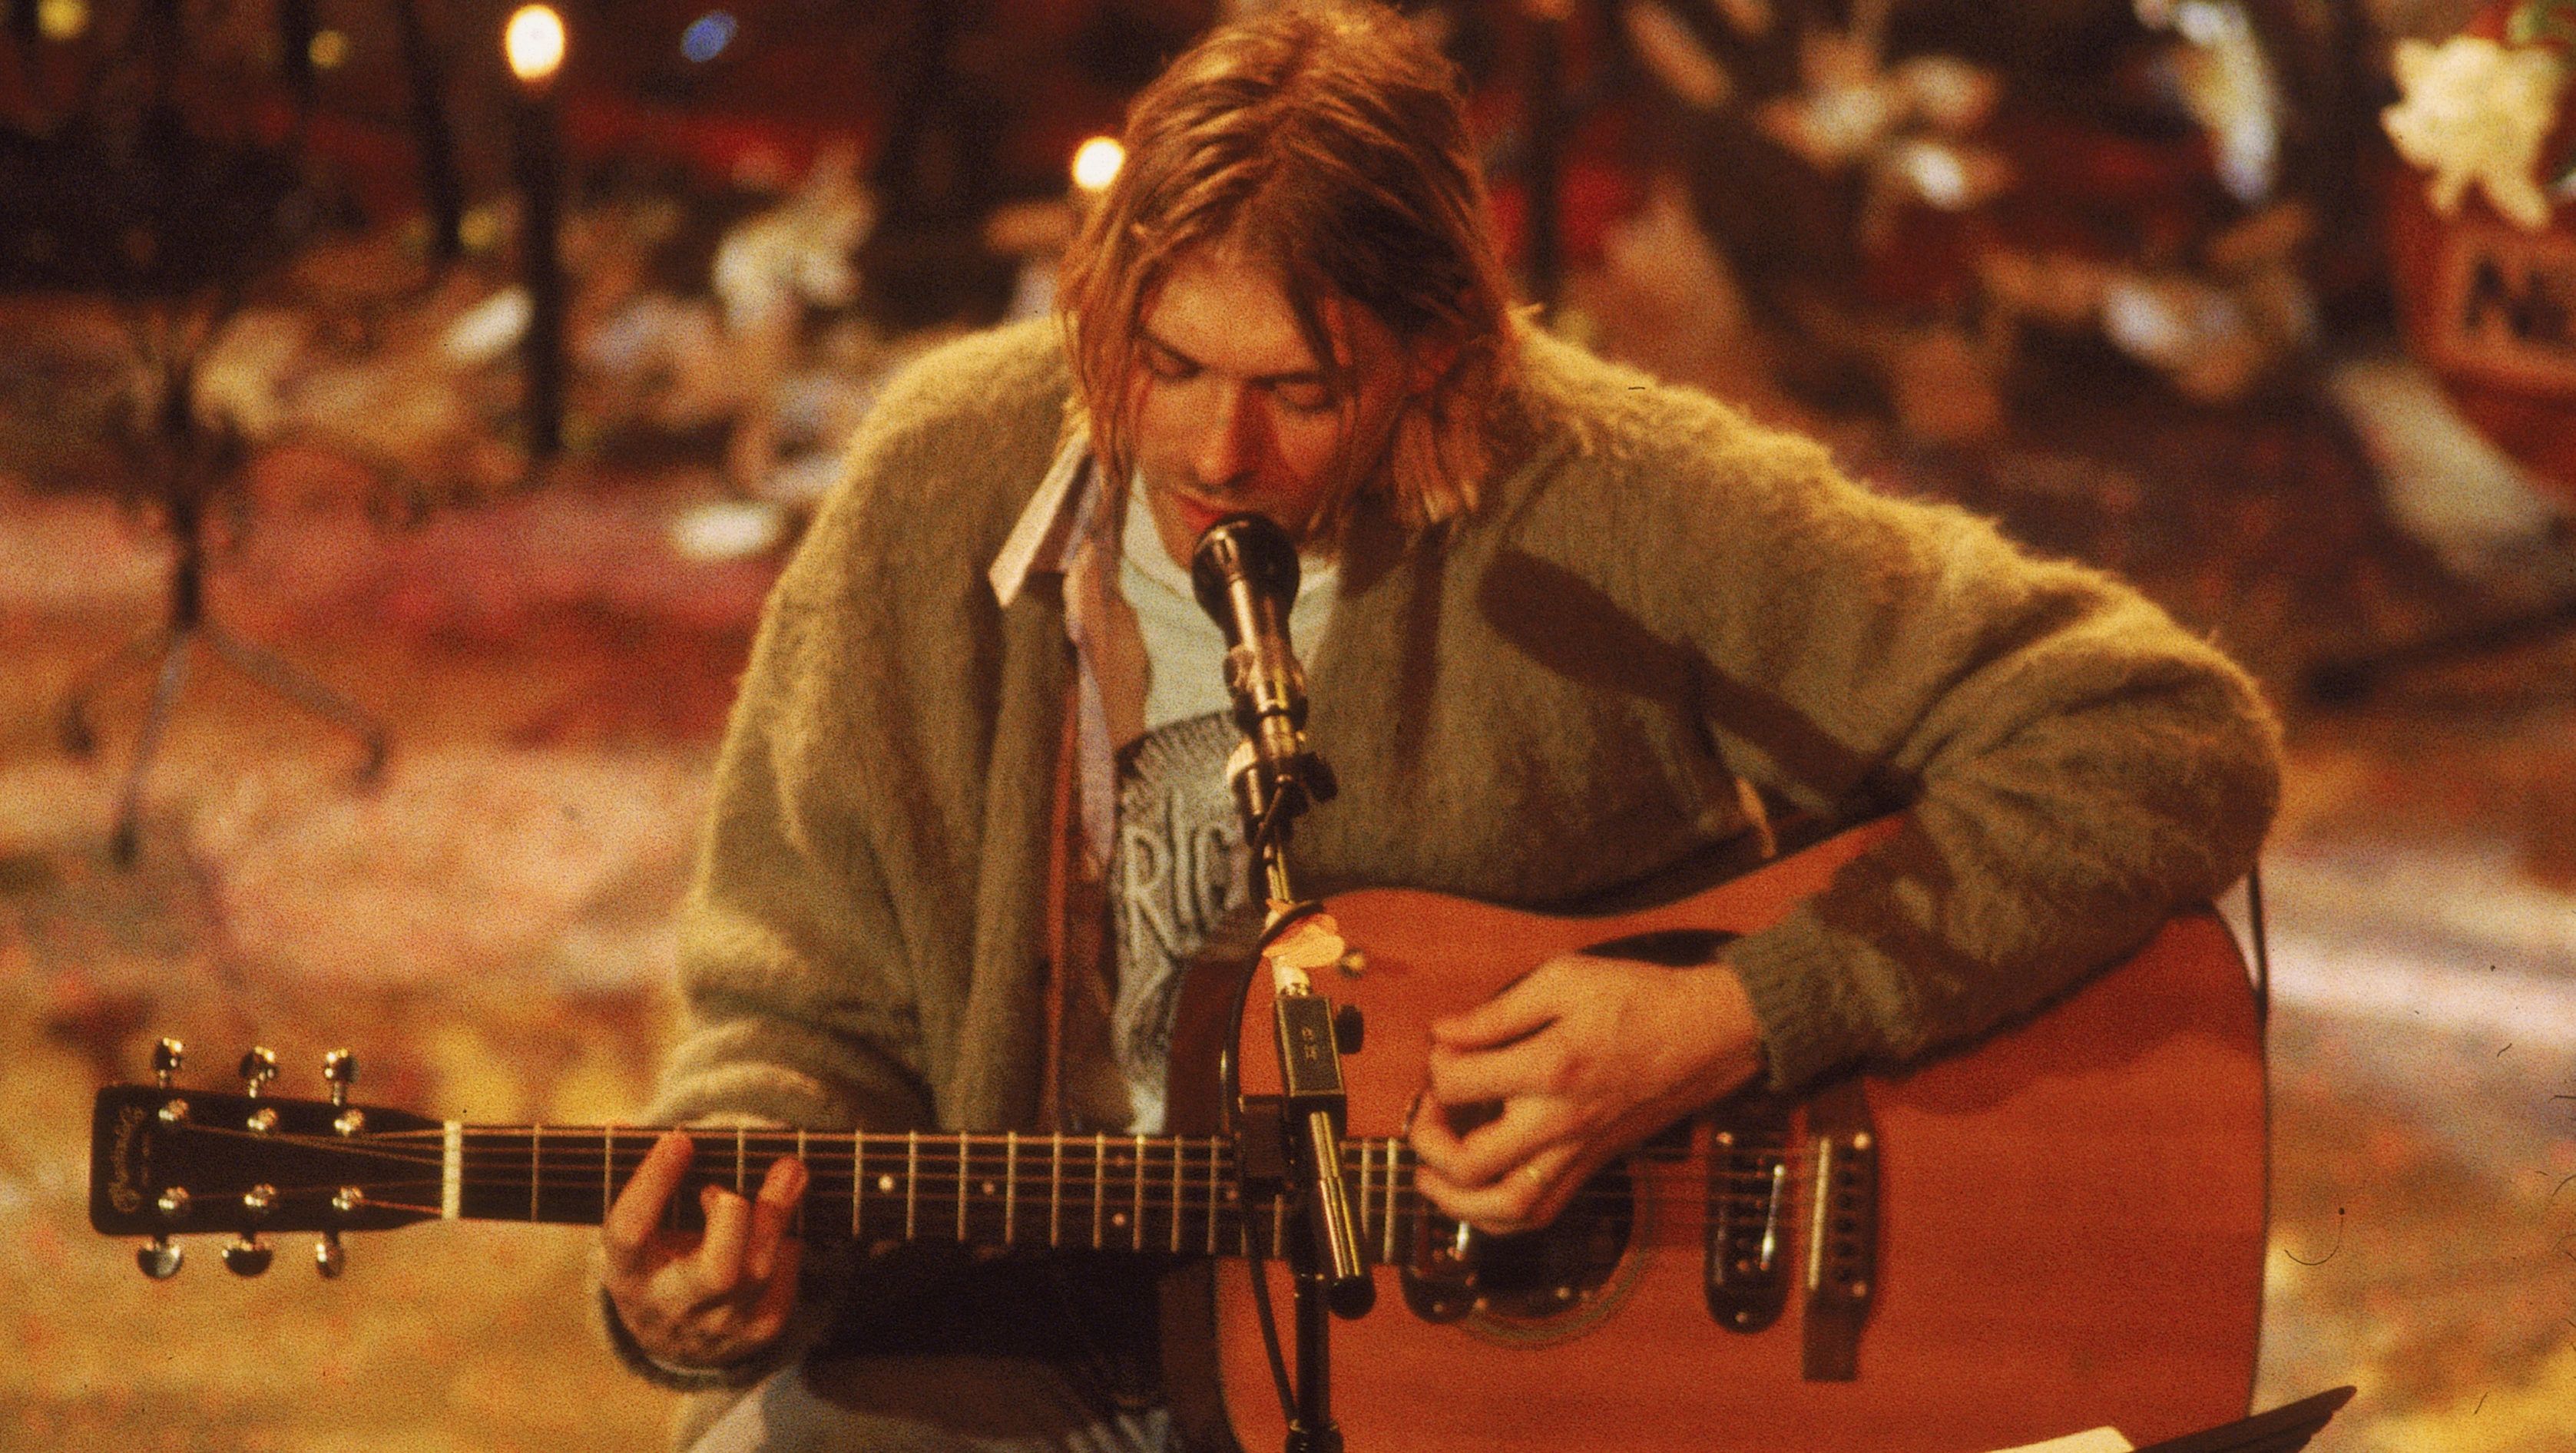 Rekordáron, közel kétmilliárd forintért kelt el Kurt Cobain gitárja egy aukción